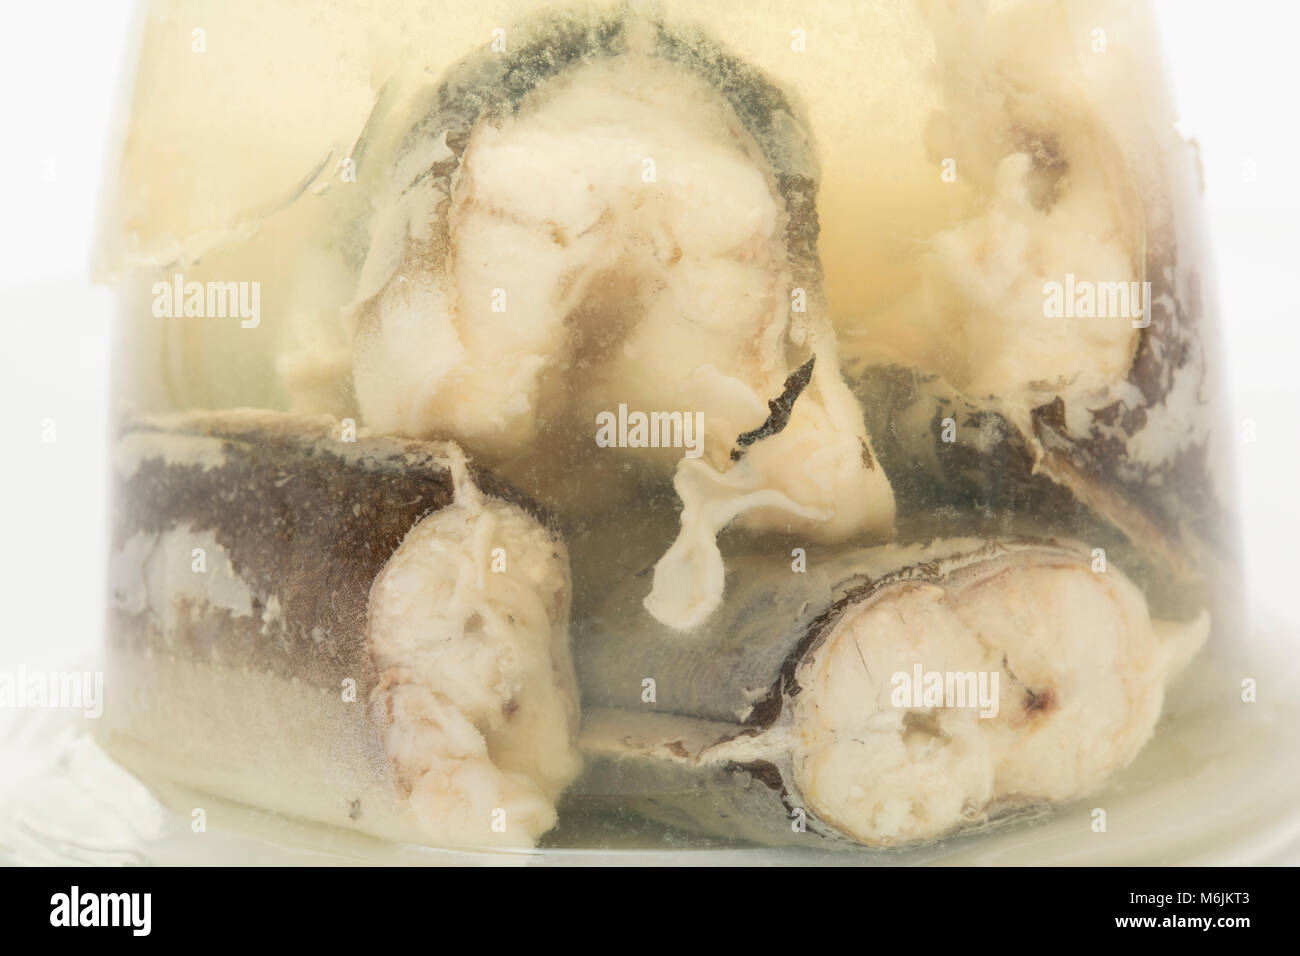 Les anguilles en gelée, Anguilla anguilla, acheté dans un supermarché en Angleterre UK GO Banque D'Images